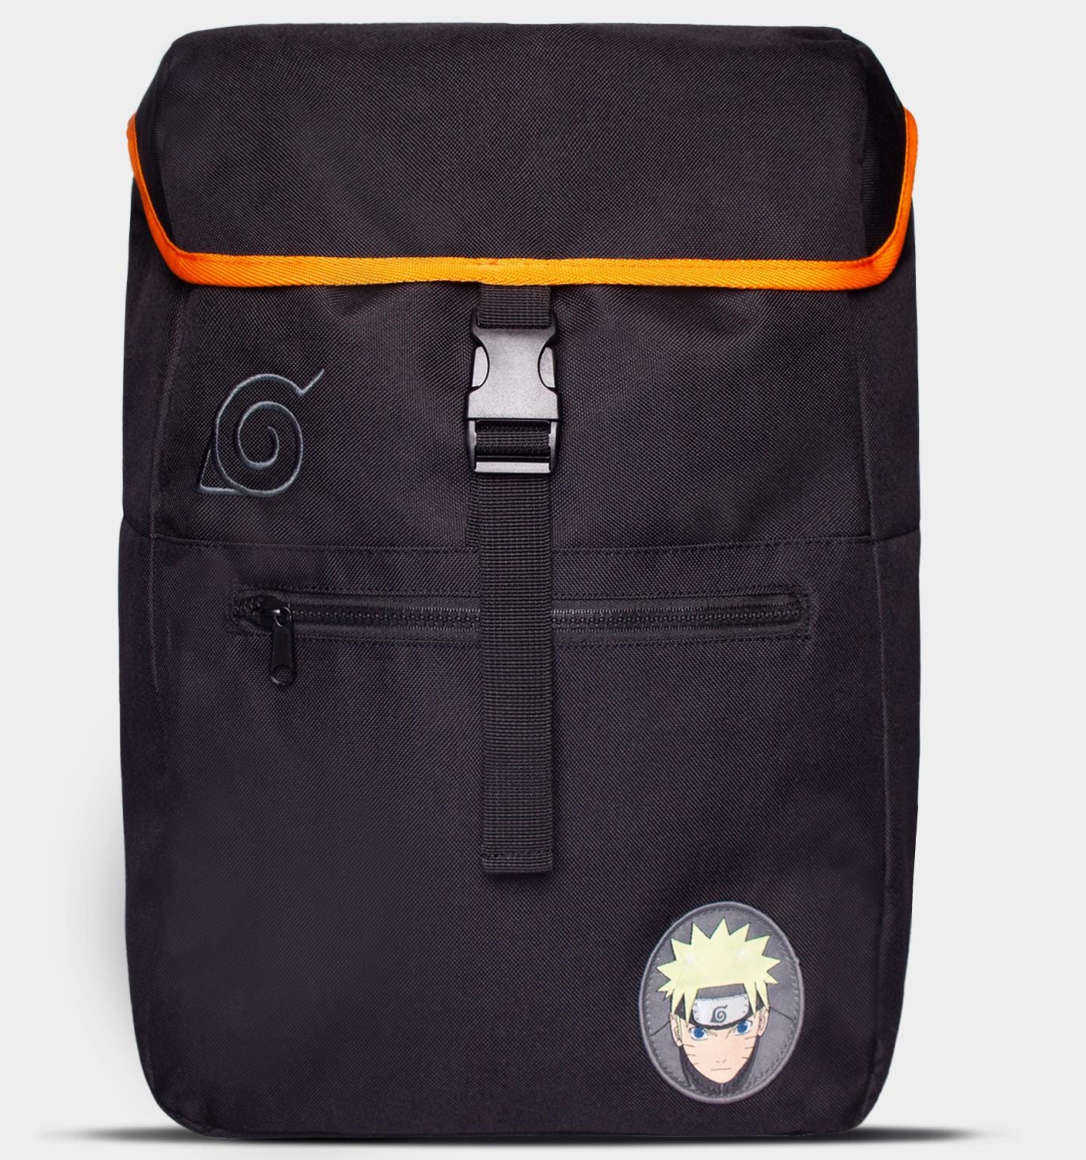 Merchandising Naruto: Men's Backpack Black (Zaino) NUOVO SIGILLATO, EDIZIONE DEL 07/09/2021 SUBITO DISPONIBILE